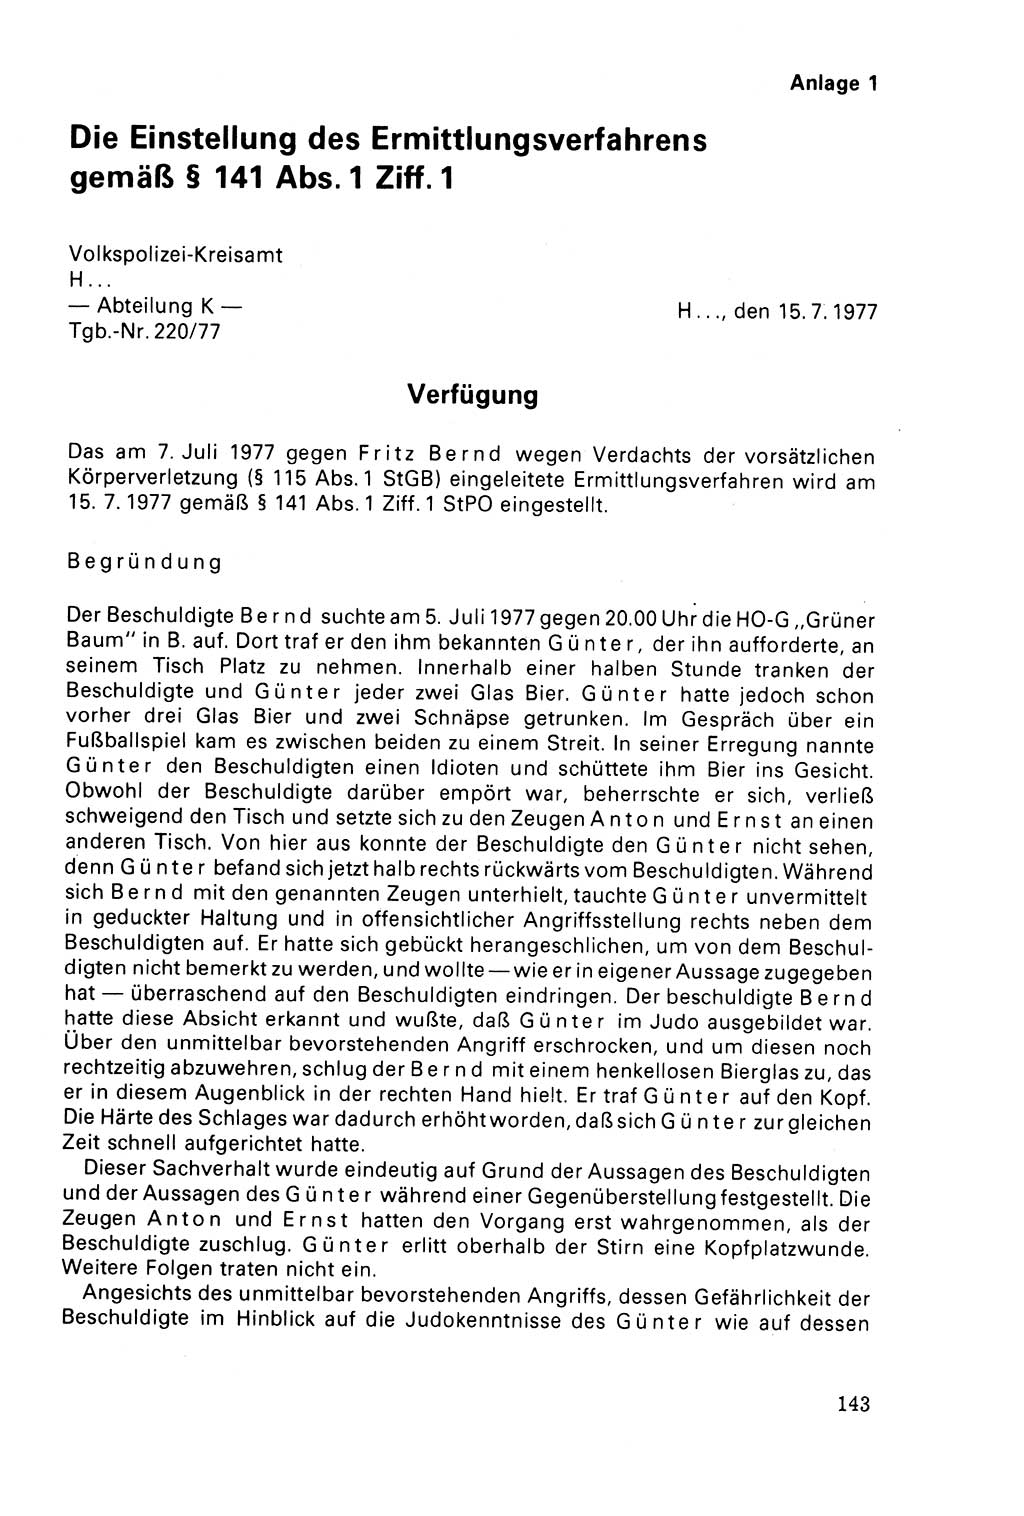 Der Abschluß des Ermittlungsverfahrens [Deutsche Demokratische Republik (DDR)] 1978, Seite 143 (Abschl. EV DDR 1978, S. 143)